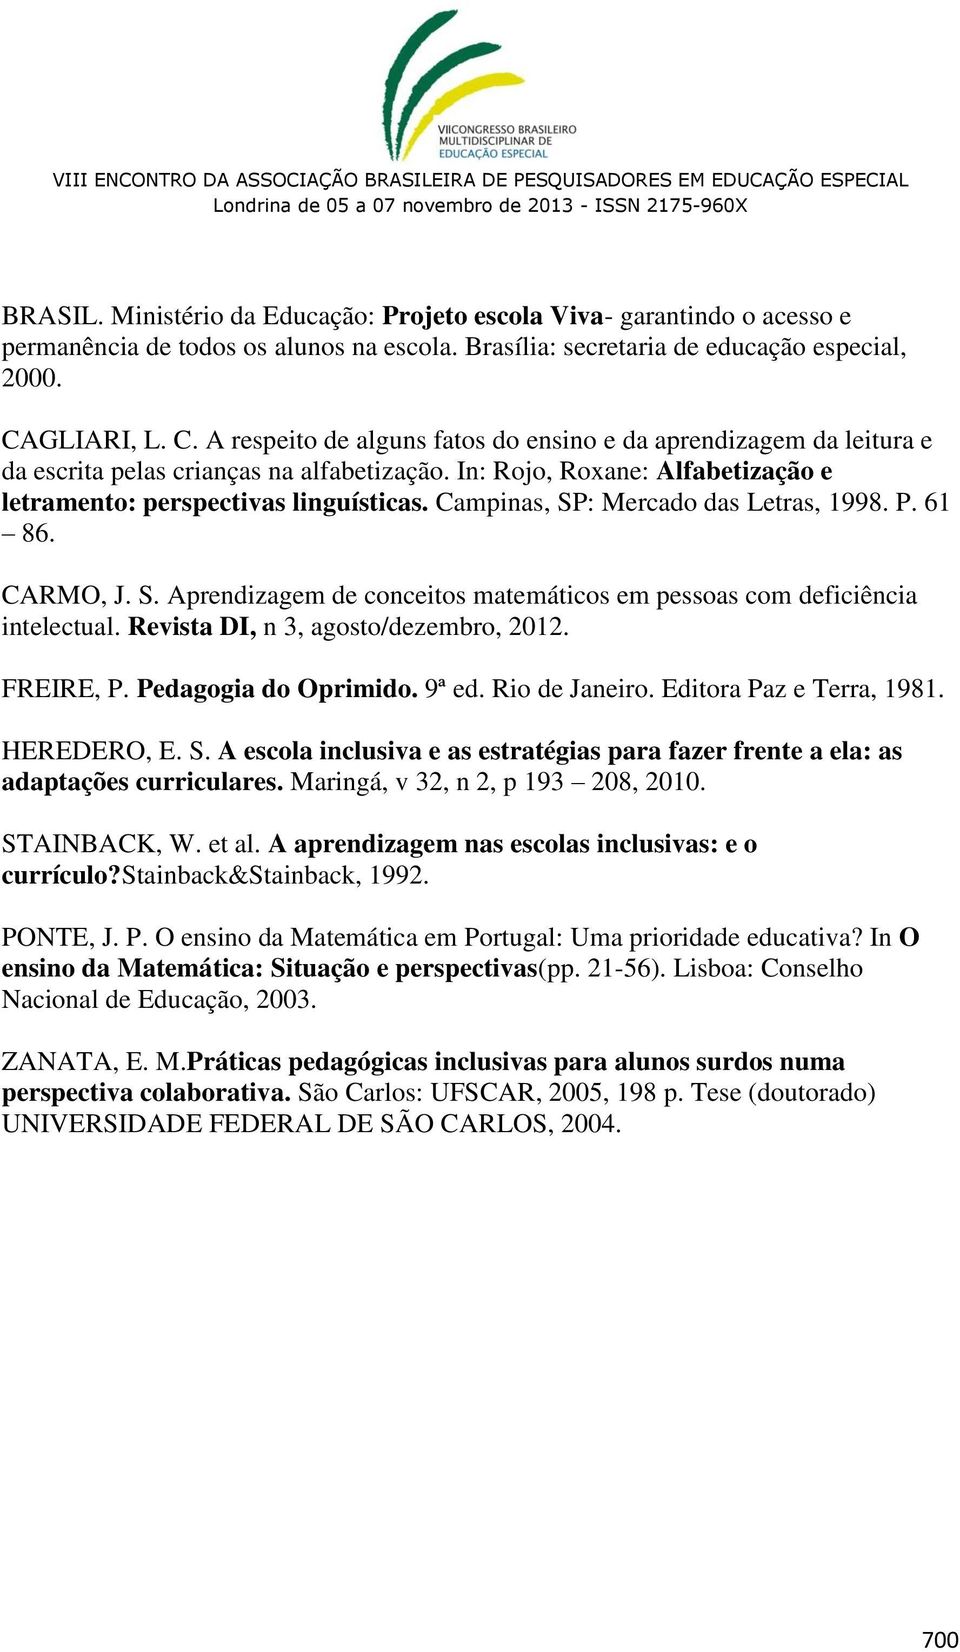 Campinas, SP: Mercado das Letras, 1998. P. 61 86. CARMO, J. S. Aprendizagem de conceitos matemáticos em pessoas com deficiência intelectual. Revista DI, n 3, agosto/dezembro, 2012. FREIRE, P.